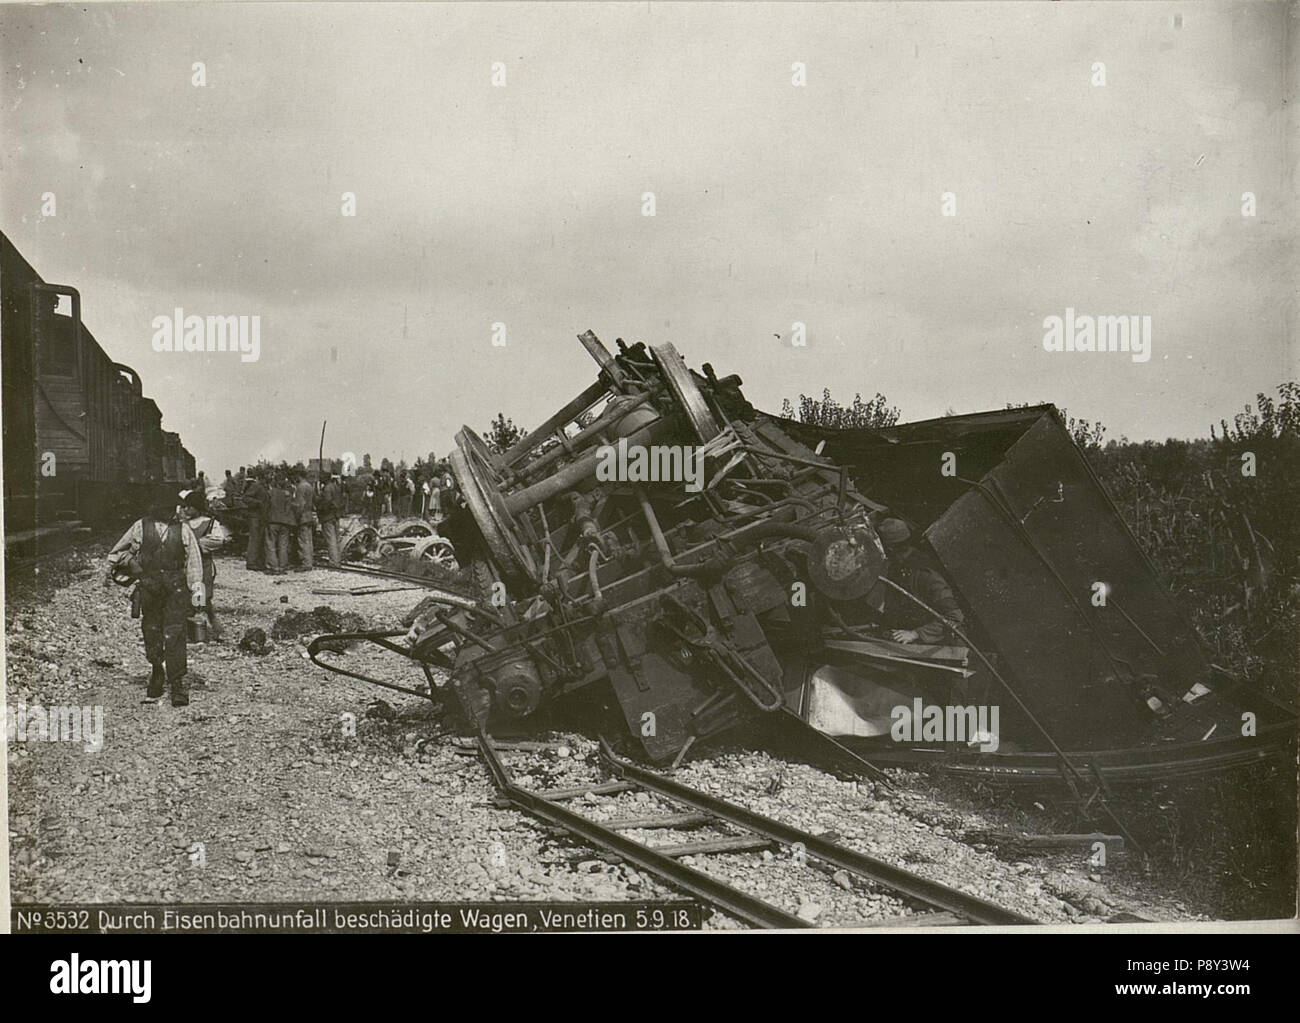 262 Durch Eisenbahnunfall beschädigte Wagen, Venetien (BildID 15624141) Stock Photo